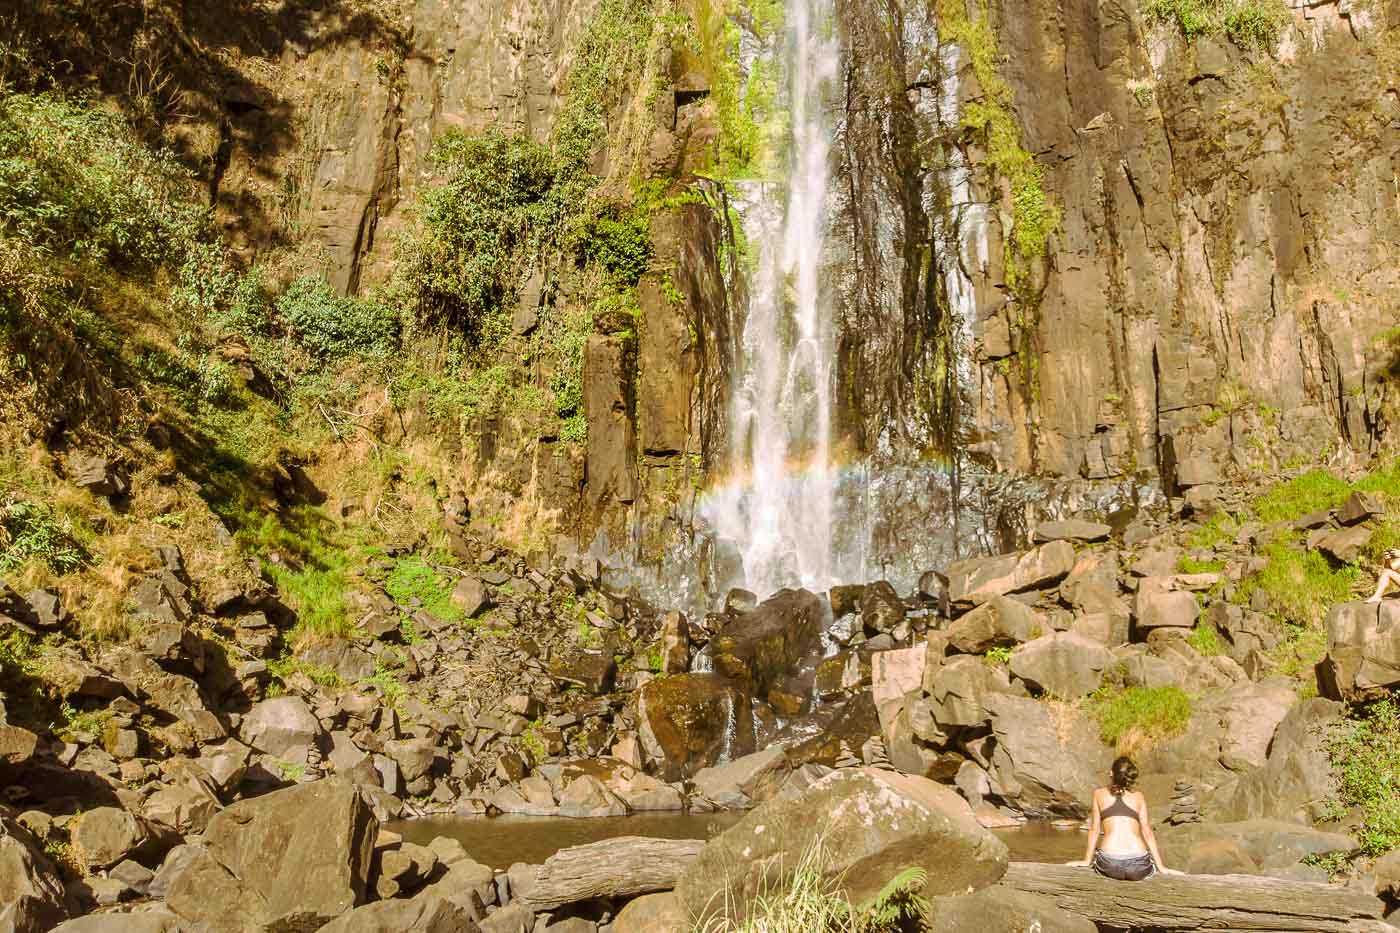 Fernanda sitting in a rock near the waterfall in Brazil